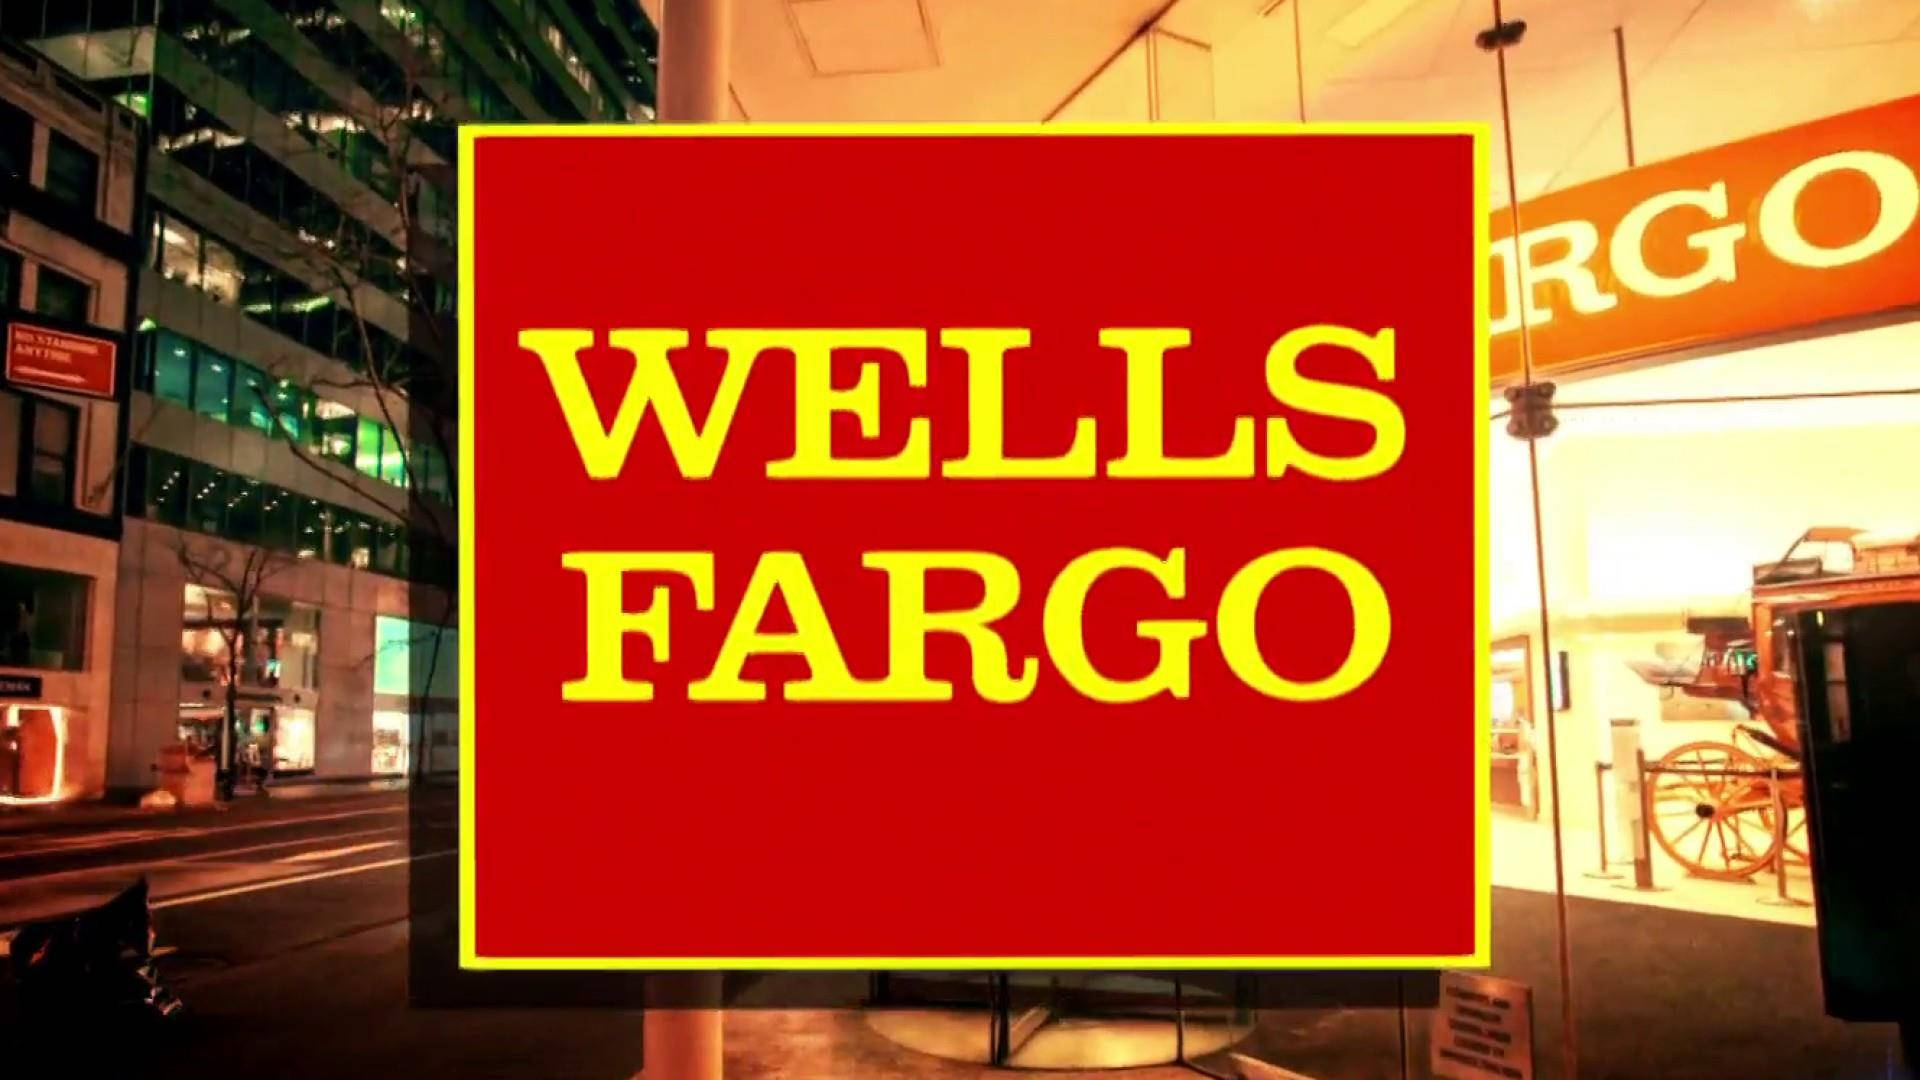 Señalde Wells Fargo En Rojo Y Amarillo. Fondo de pantalla